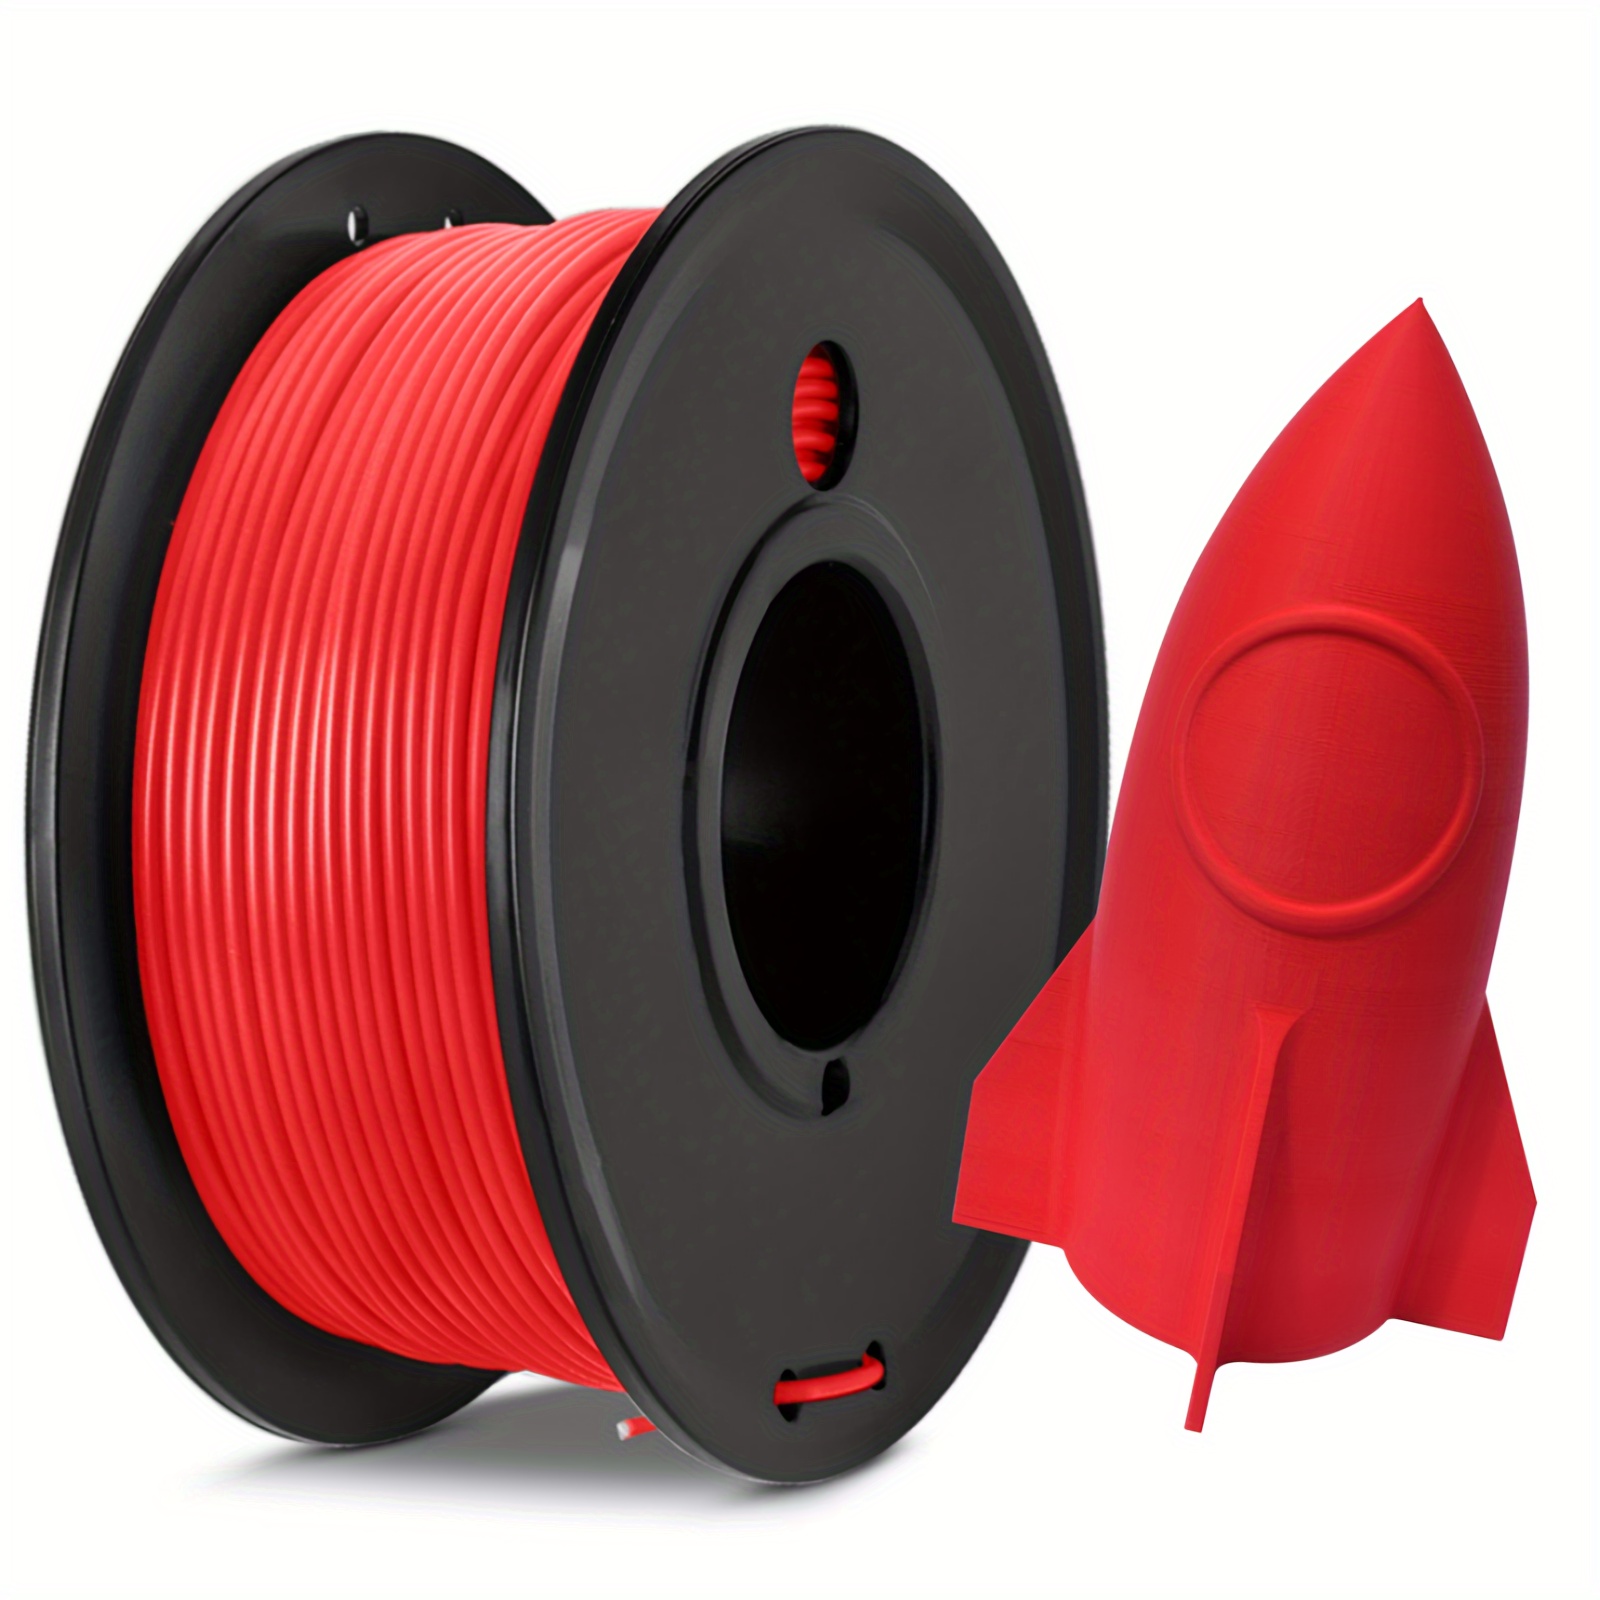 Filament PLA En Fibre De Carbone 1,75 Mm 250 G/0,55 Lb Filament  D'imprimante 3D PLA Renforcé De Fibre De Carbone Filament D'impression 3D  PLA-CF Solid